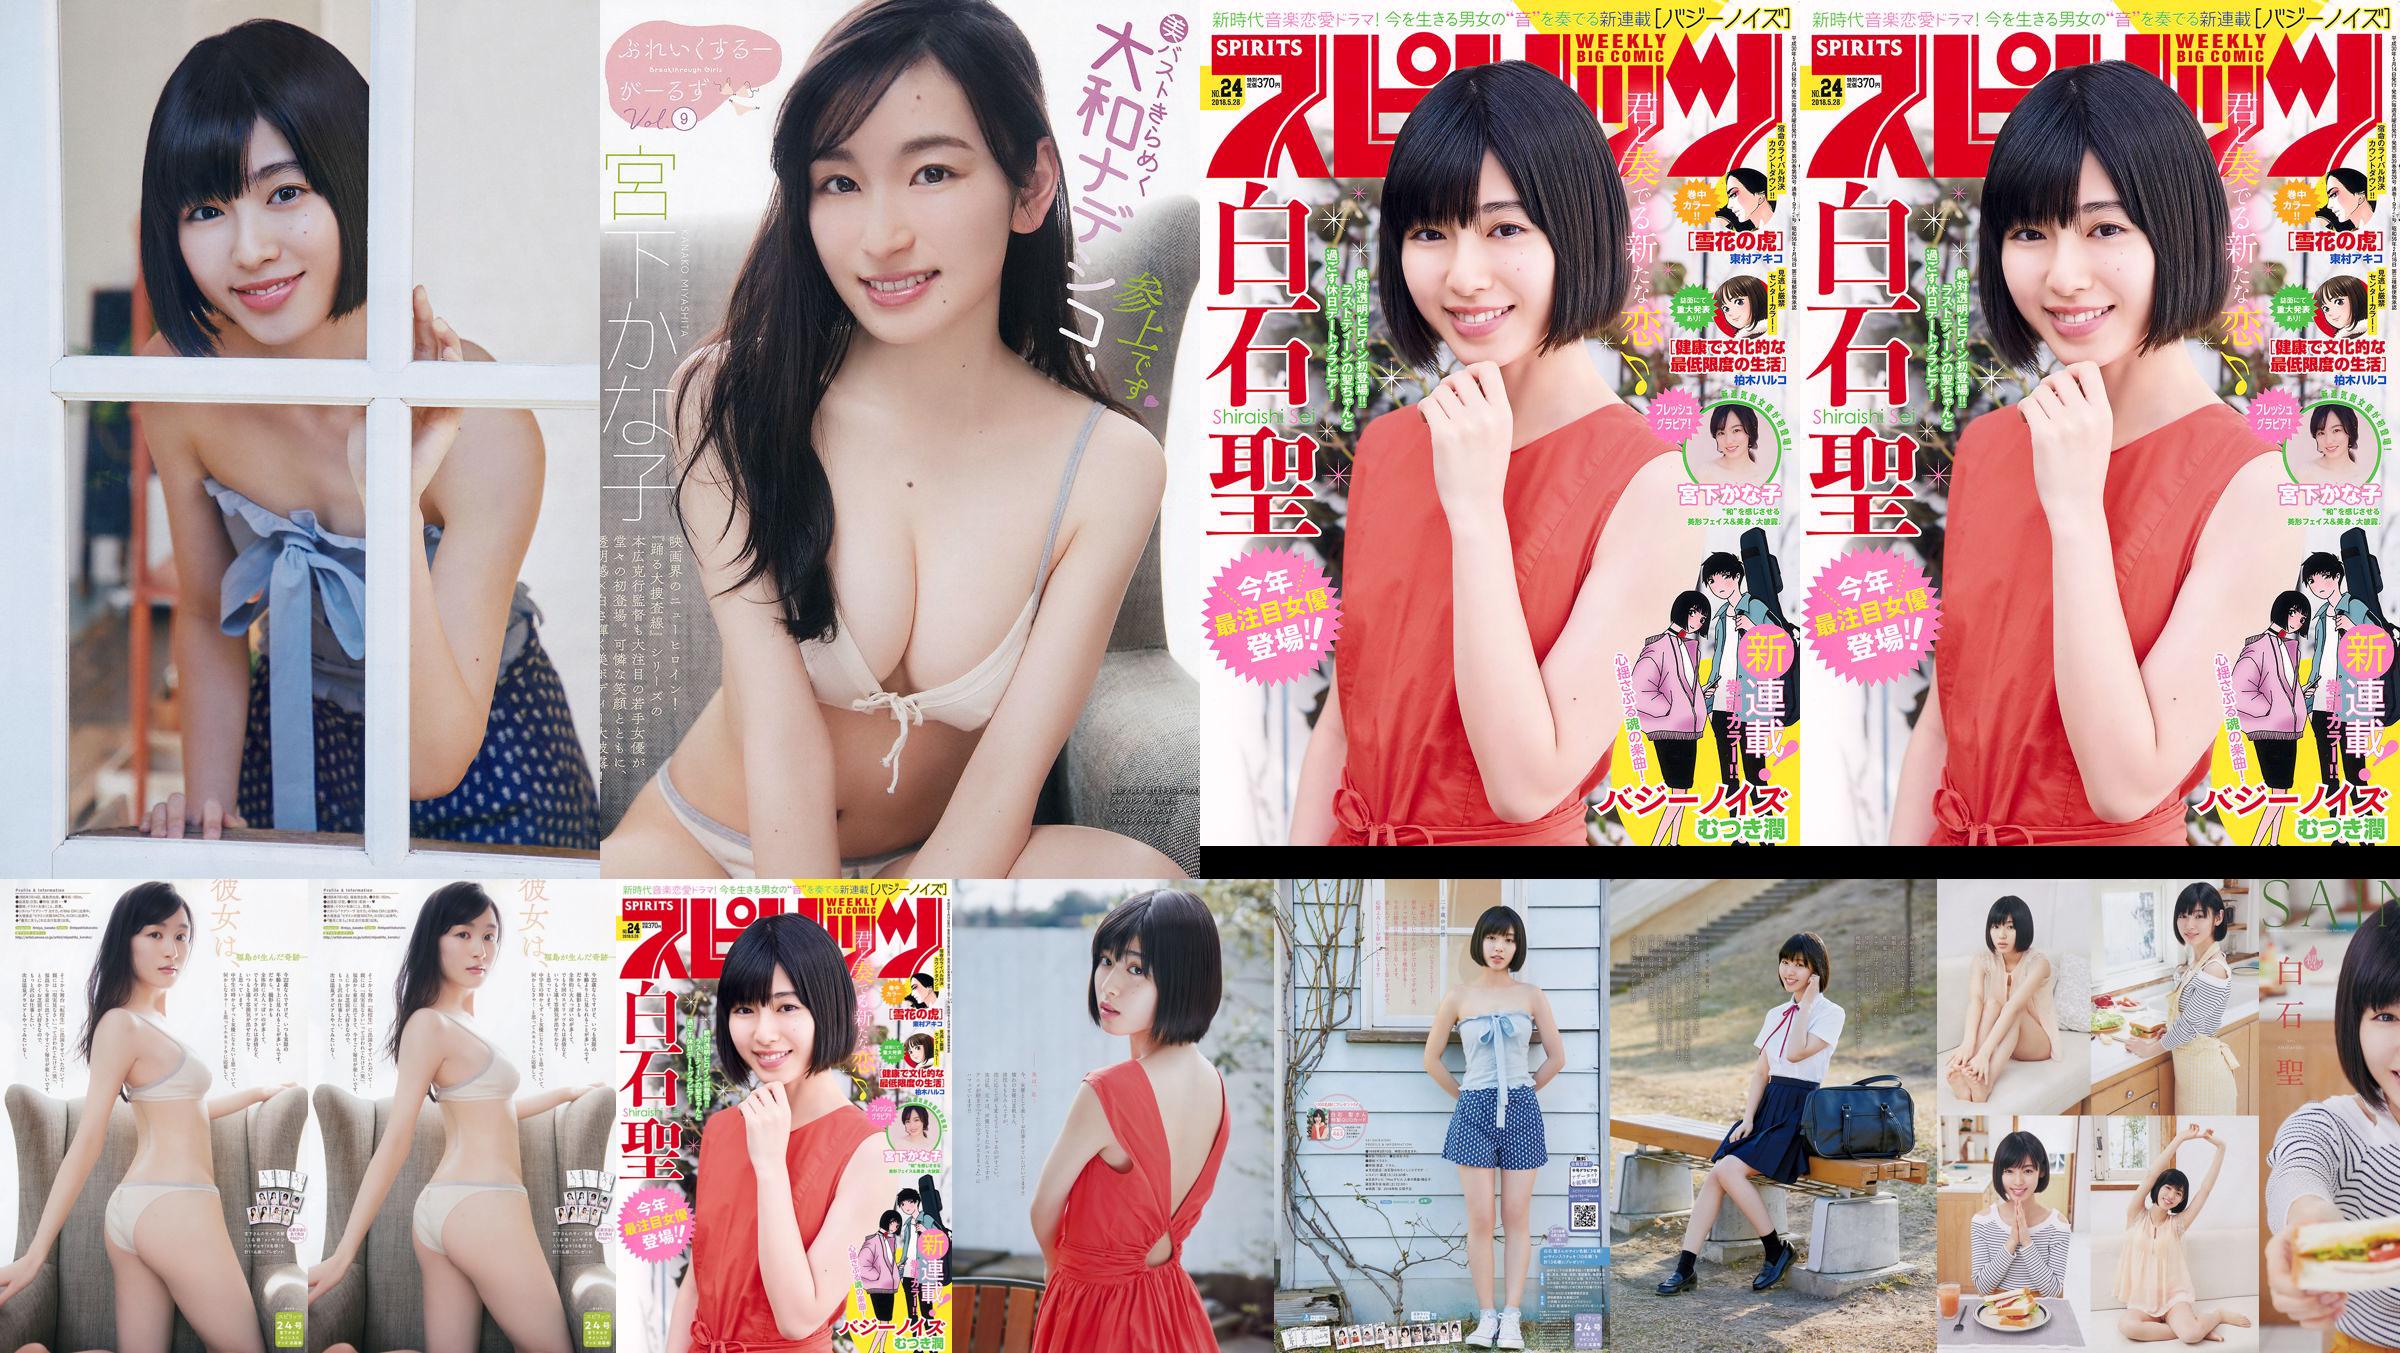 Юрия Кизаки Нана Окада AKB48 Under Girls [Weekly Young Jump] 2015 № 36-37 Фото No.847ccd Страница 1